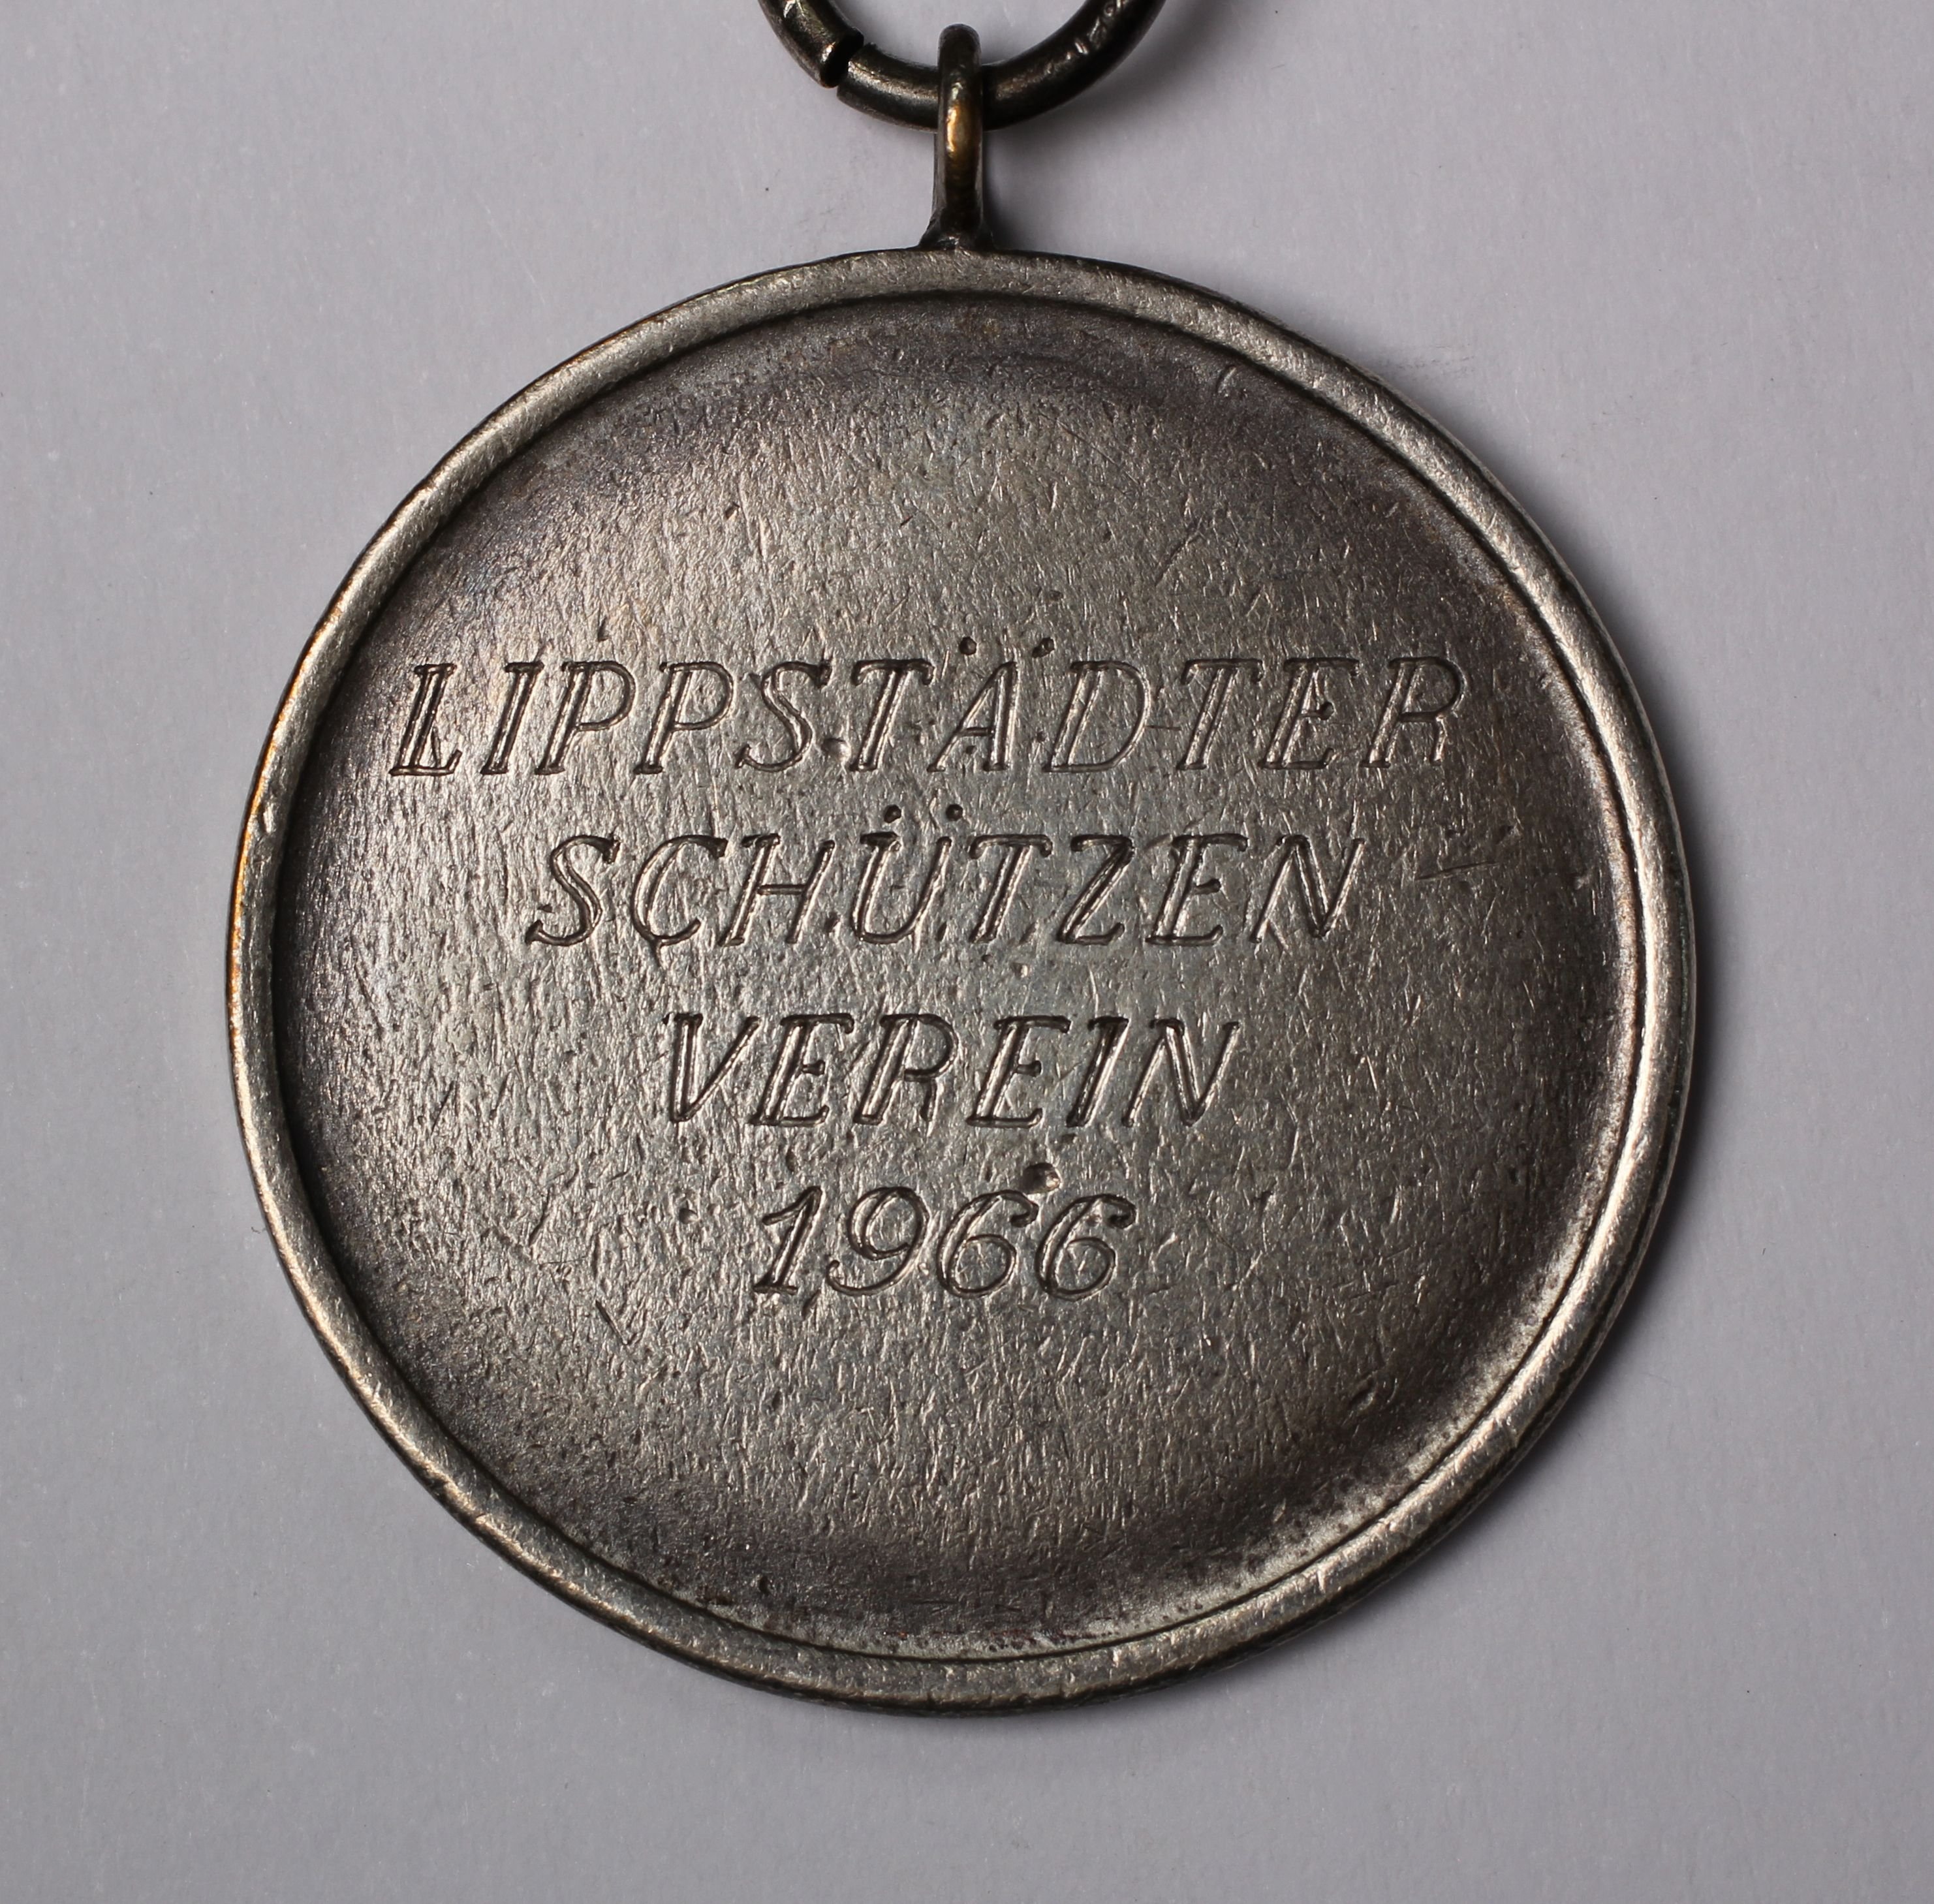 Medaille Lippstädter Schützenverein 1966 (Stadtmuseum Lippstadt CC BY-NC-ND)